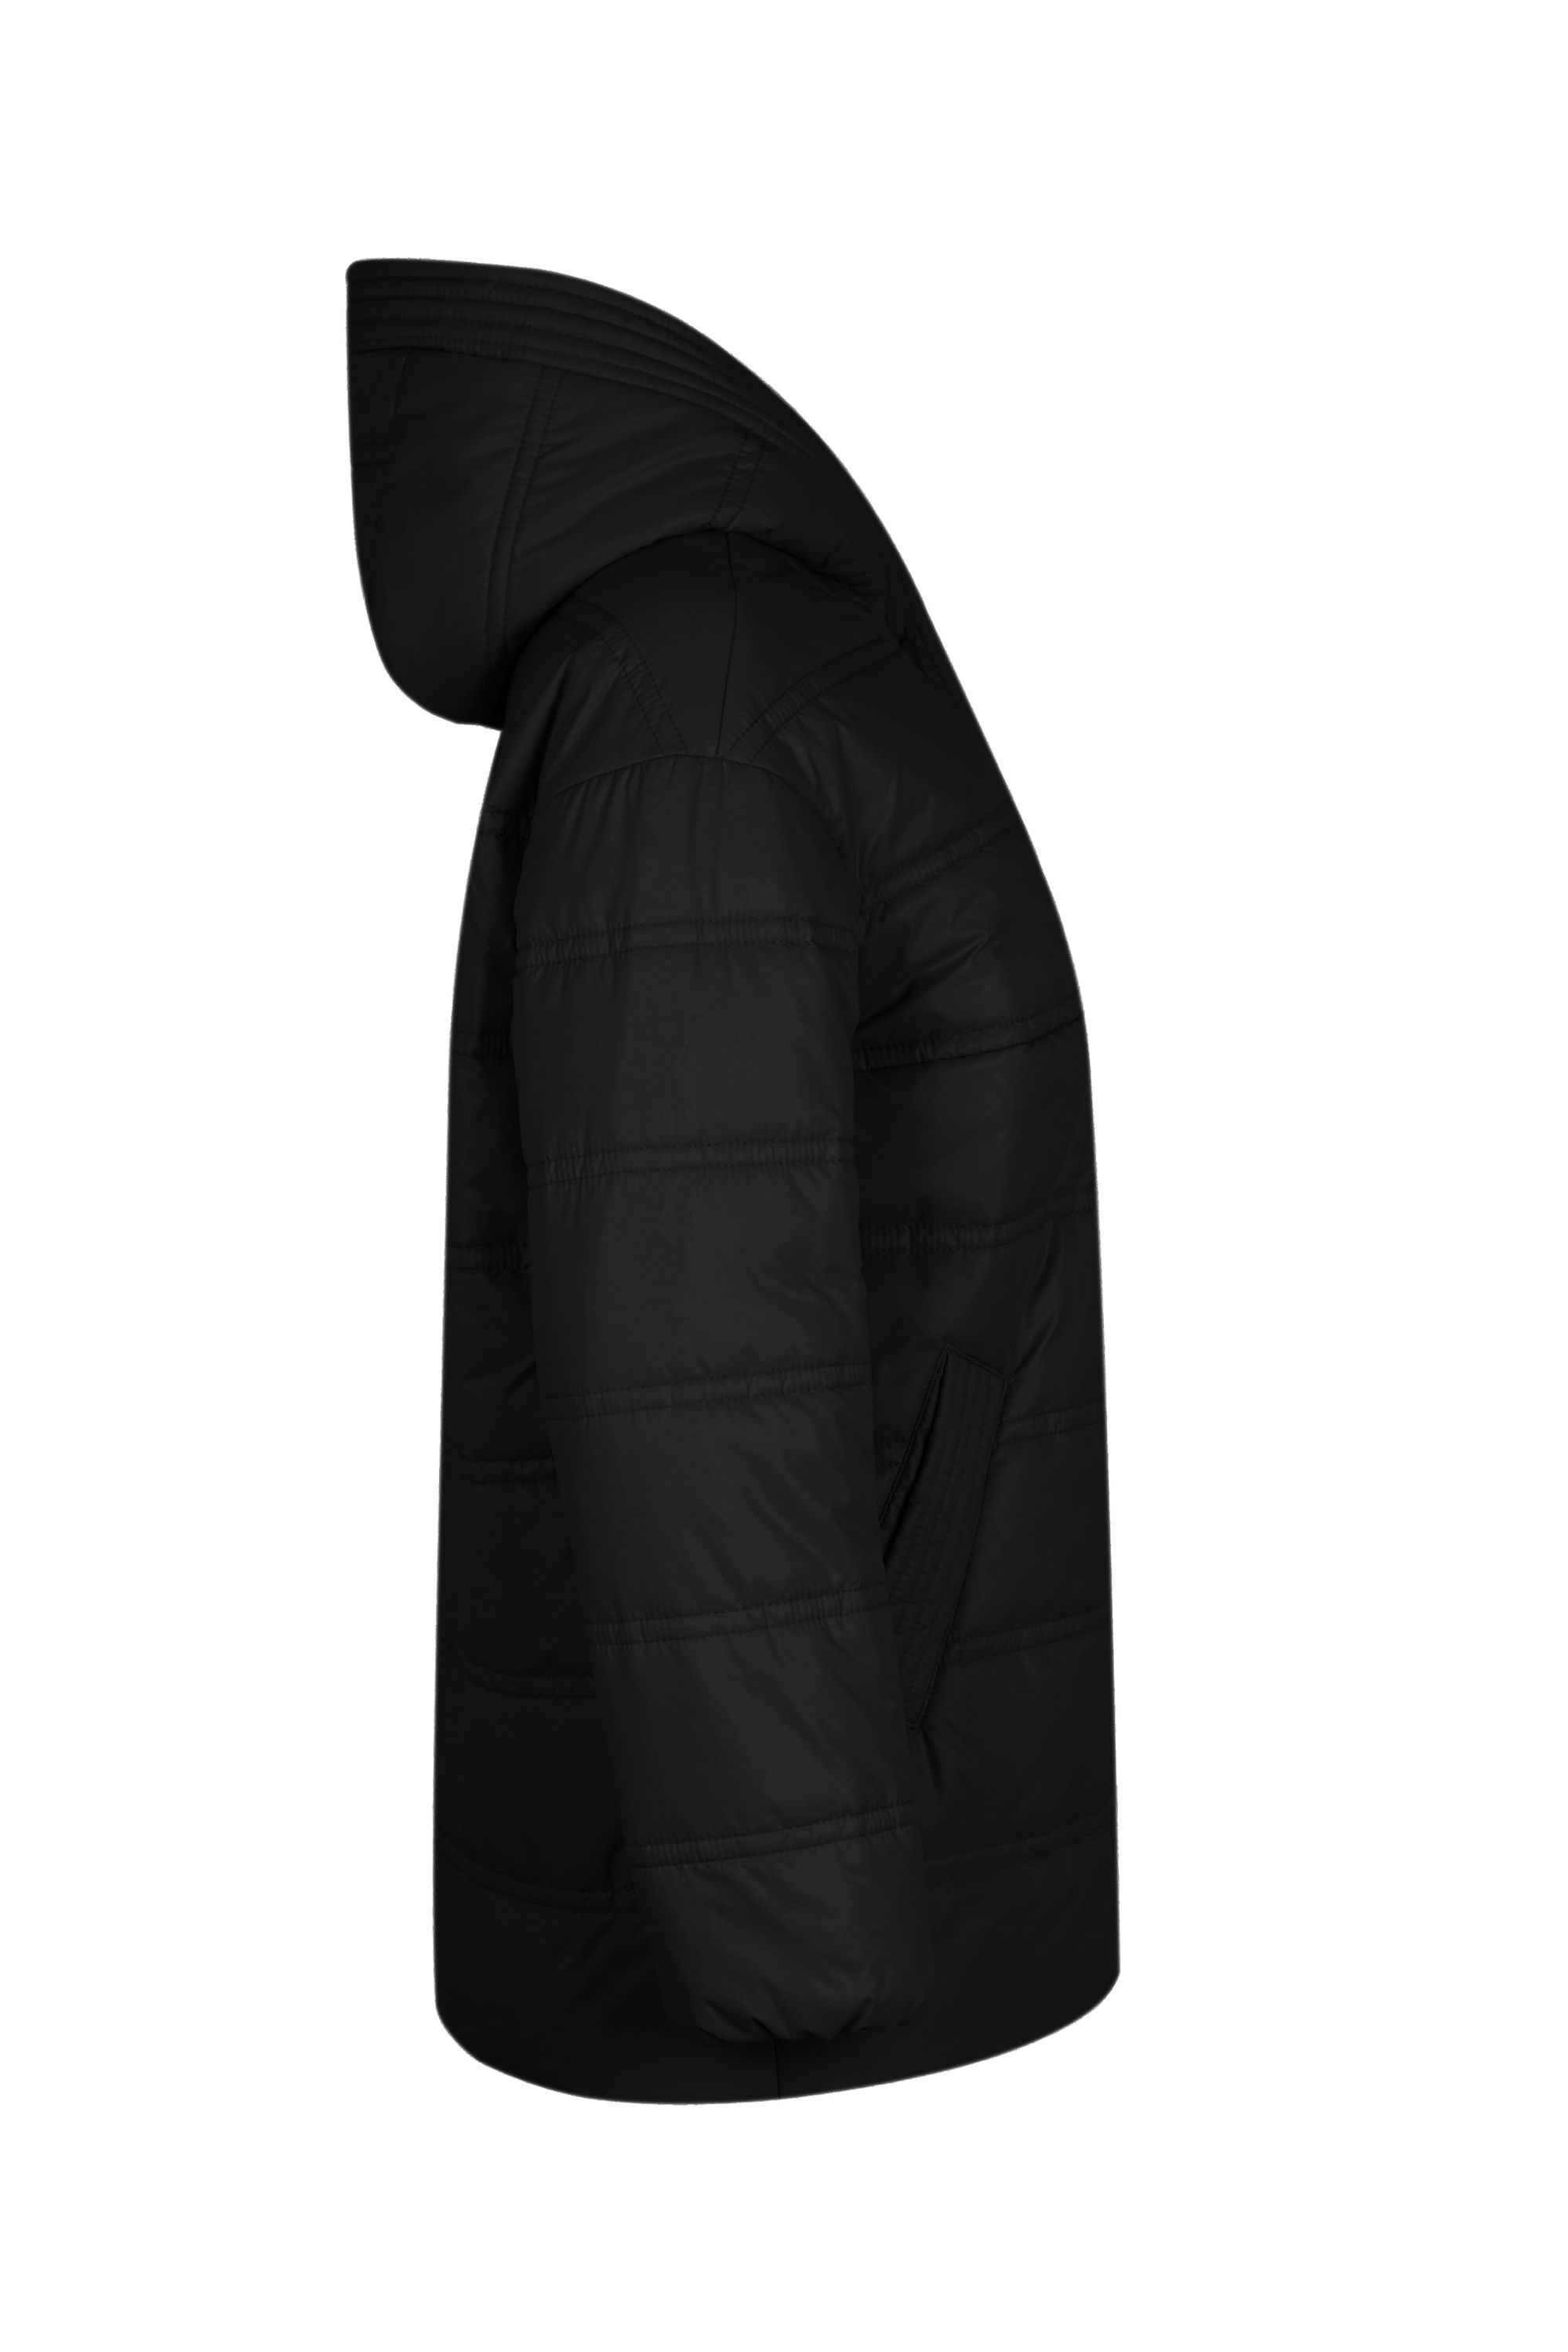 Куртка женская плащевая утепленная 4-155. Фото 2.